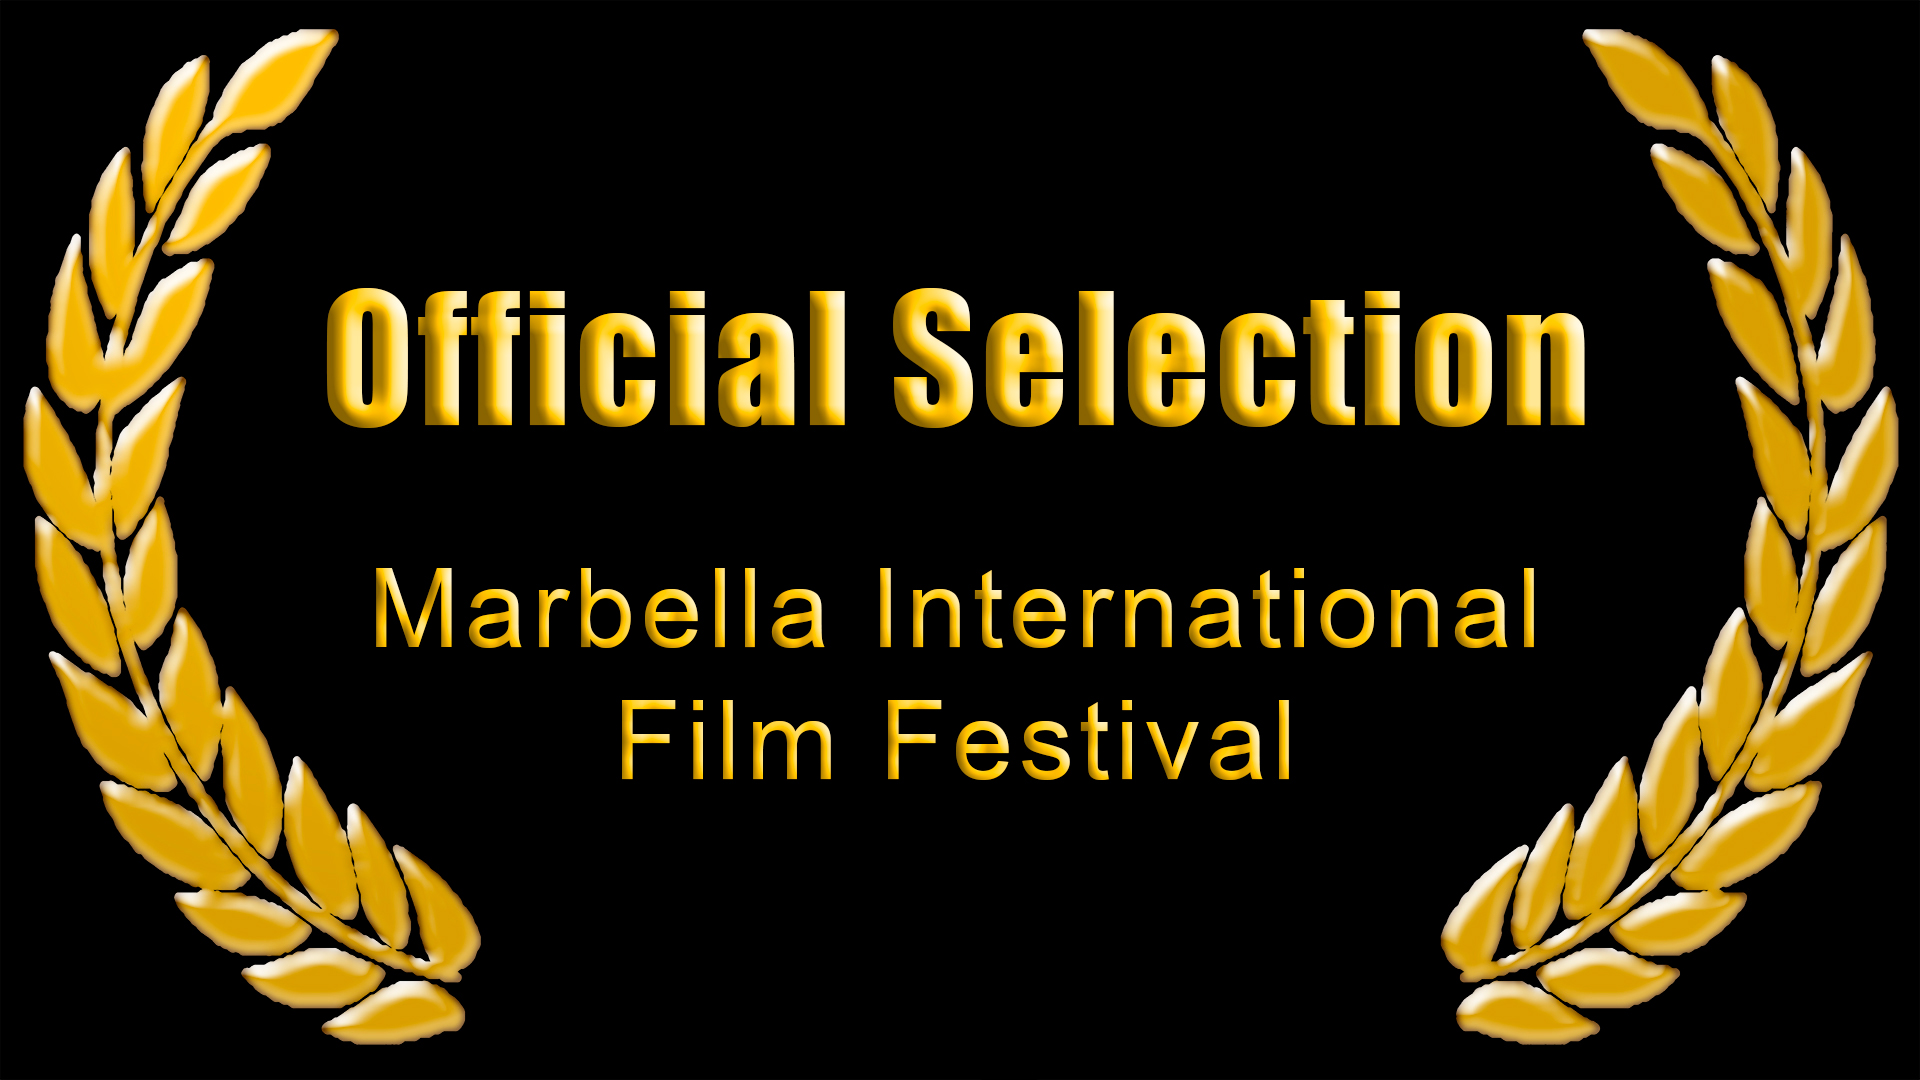 Marbella International Film Festival, 2012